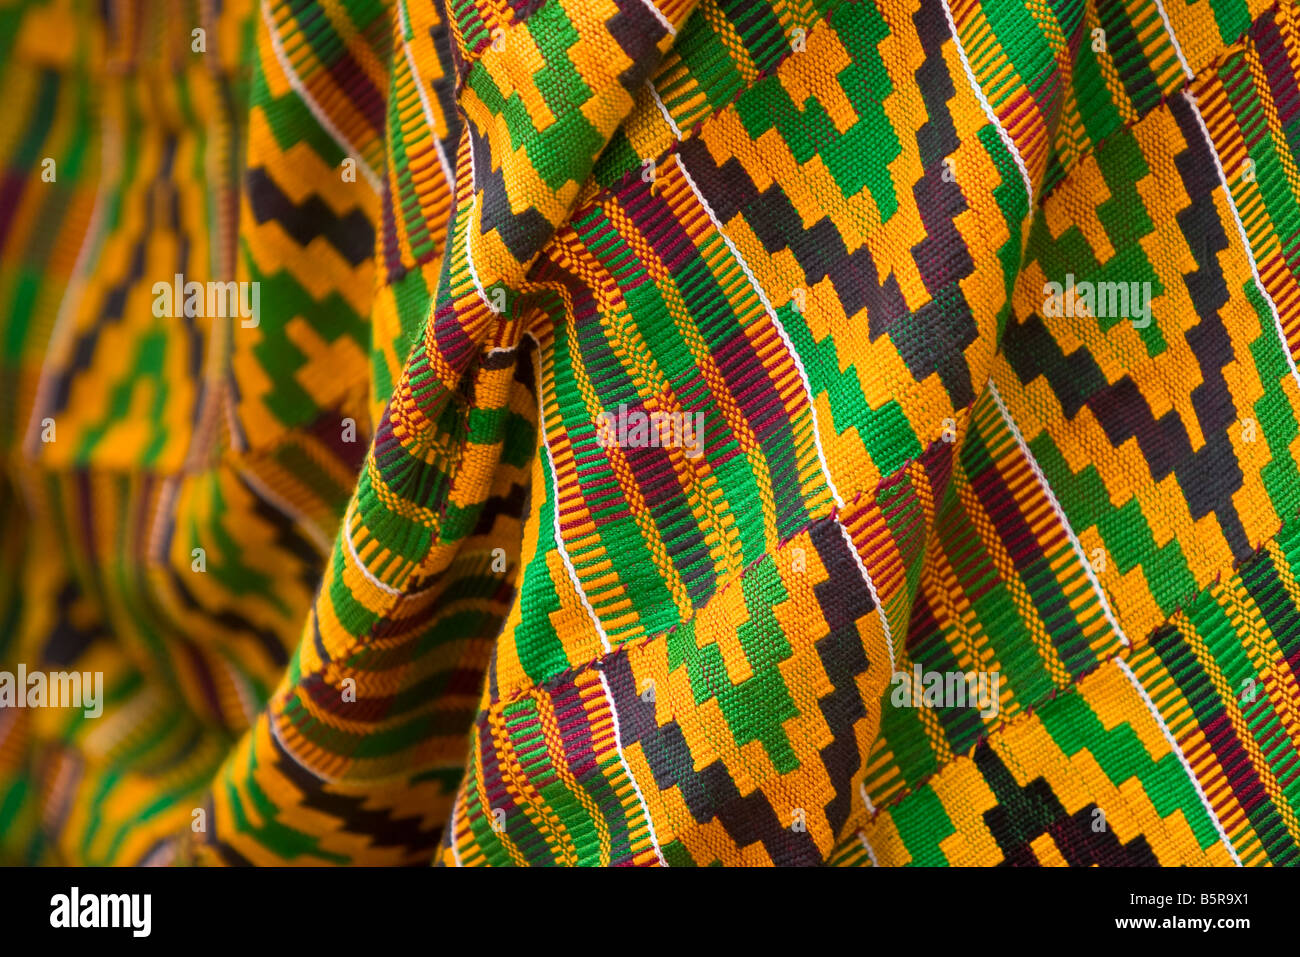 Detalle de Herodes la túnica gastada durante una representación africana de las estaciones de la cruz se recuerdan durante la Pascua en Lomé, Togo. Foto de stock